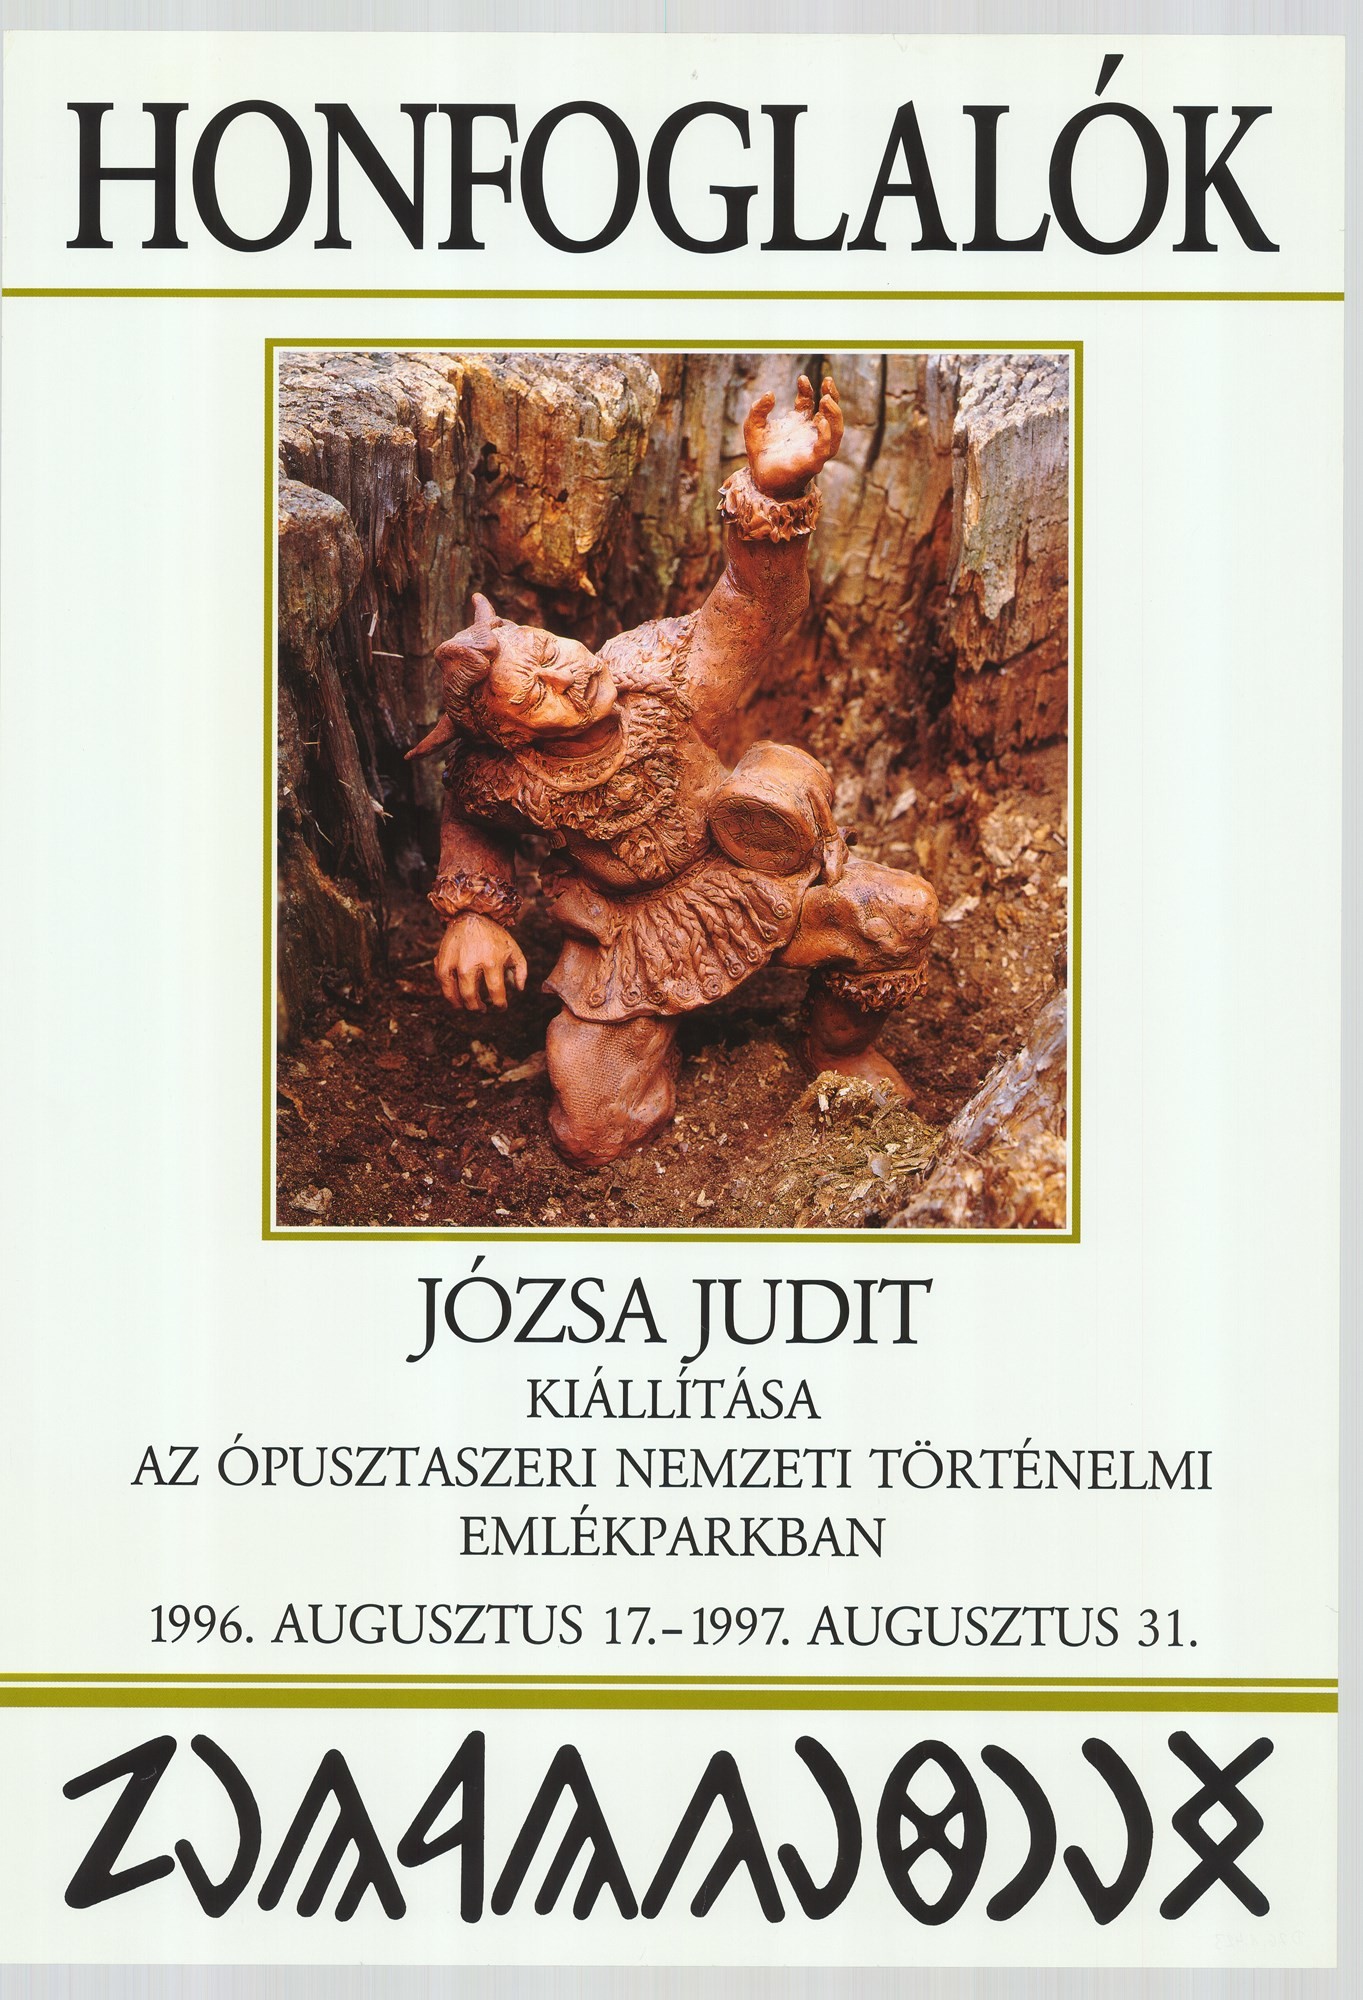 Kiállítási plakát - Józsa Judit, 1997 (Postamúzeum CC BY-NC-SA)